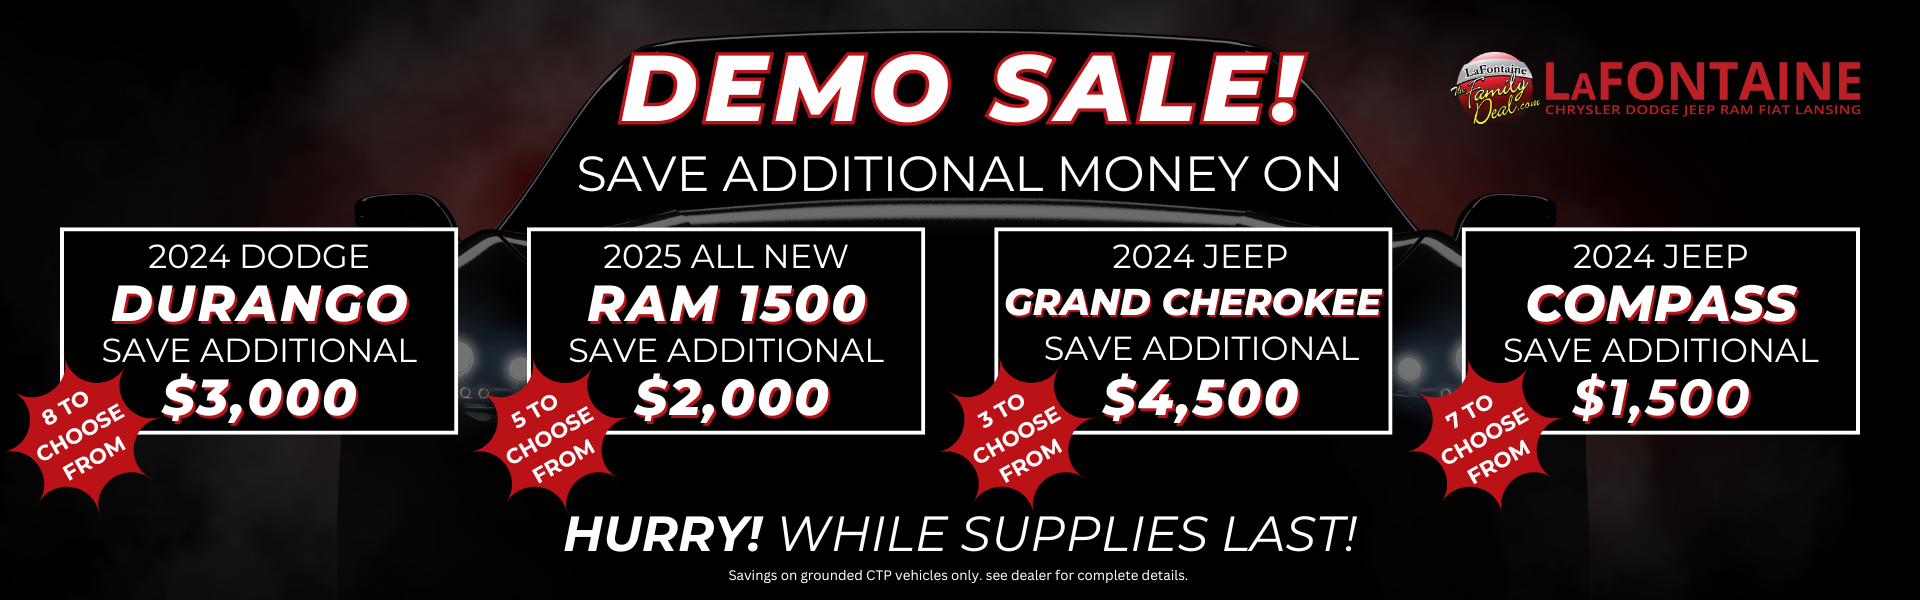 Demo sale at LaFontaine Chrysler Dodge Jeep RAM FIAT Lansing in Lansing, MI